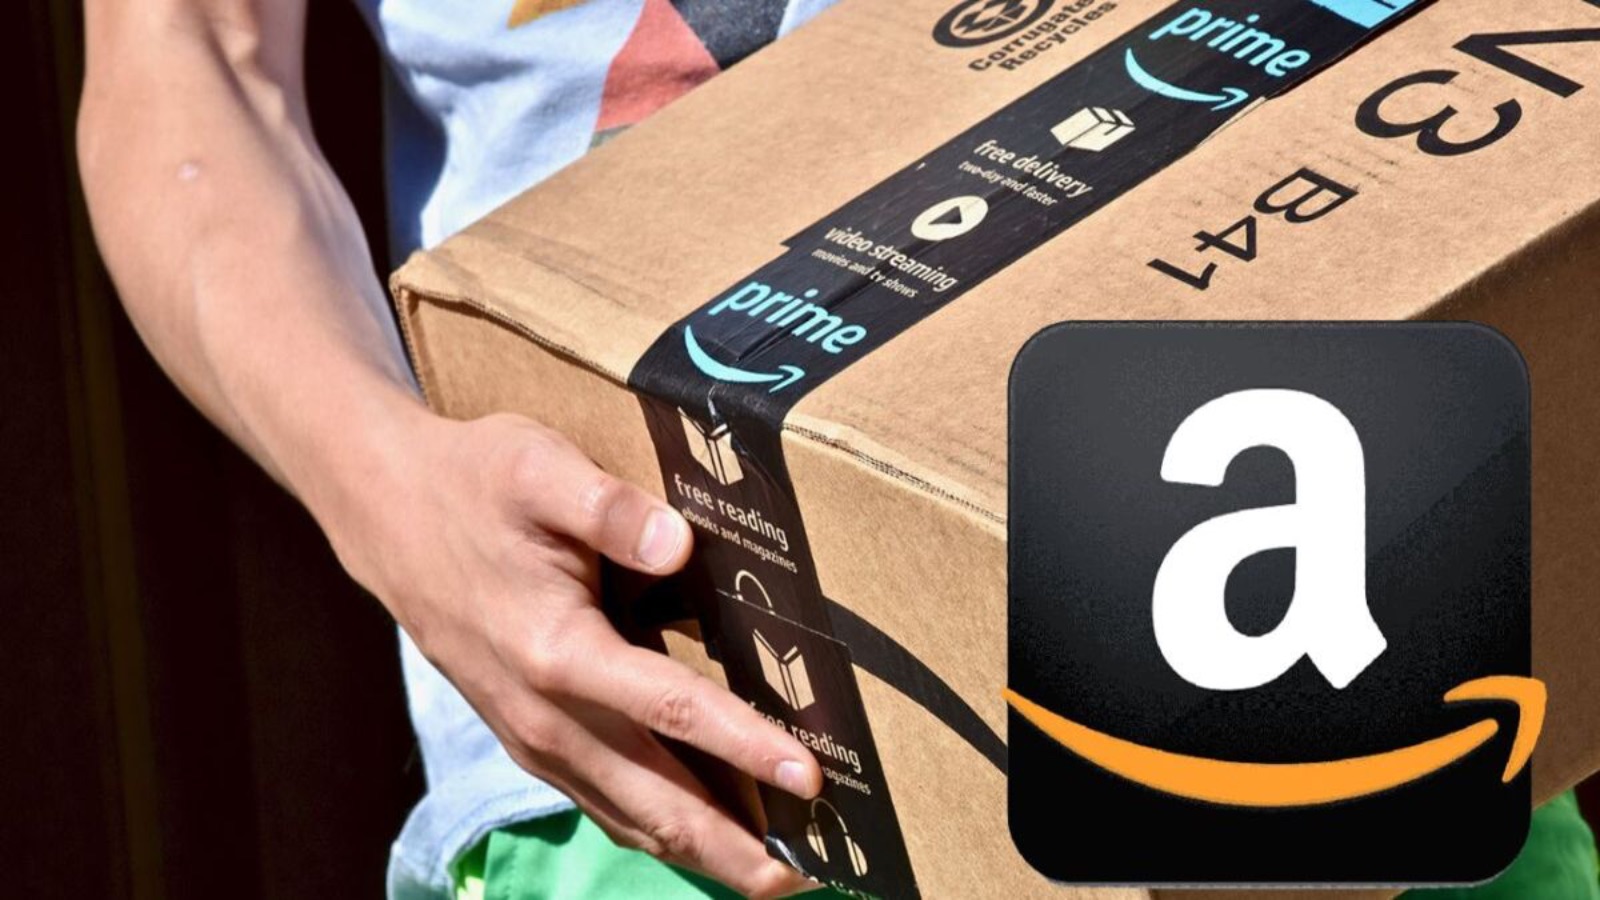 Amazon affonda la CONCORRENZA, le offerte sugli iPhone sono al 50%